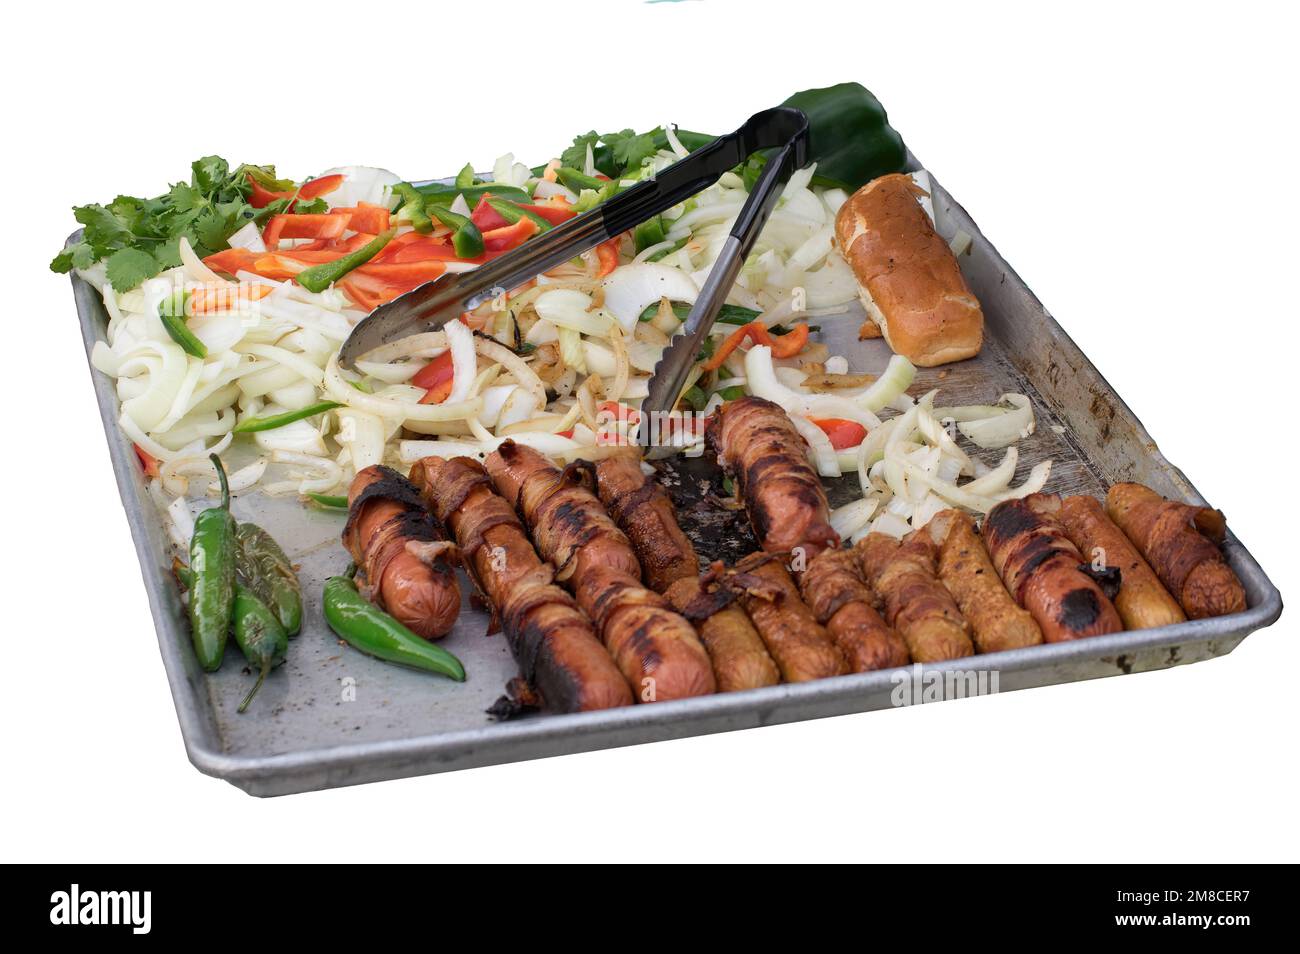 Ein Fast-Food-Tablett, Hot Dogs, Brötchen und gerührtes, frittiertes Gemüse werden vom Straßenverkäufer angeboten, vor weißem Hintergrund. Stockfoto